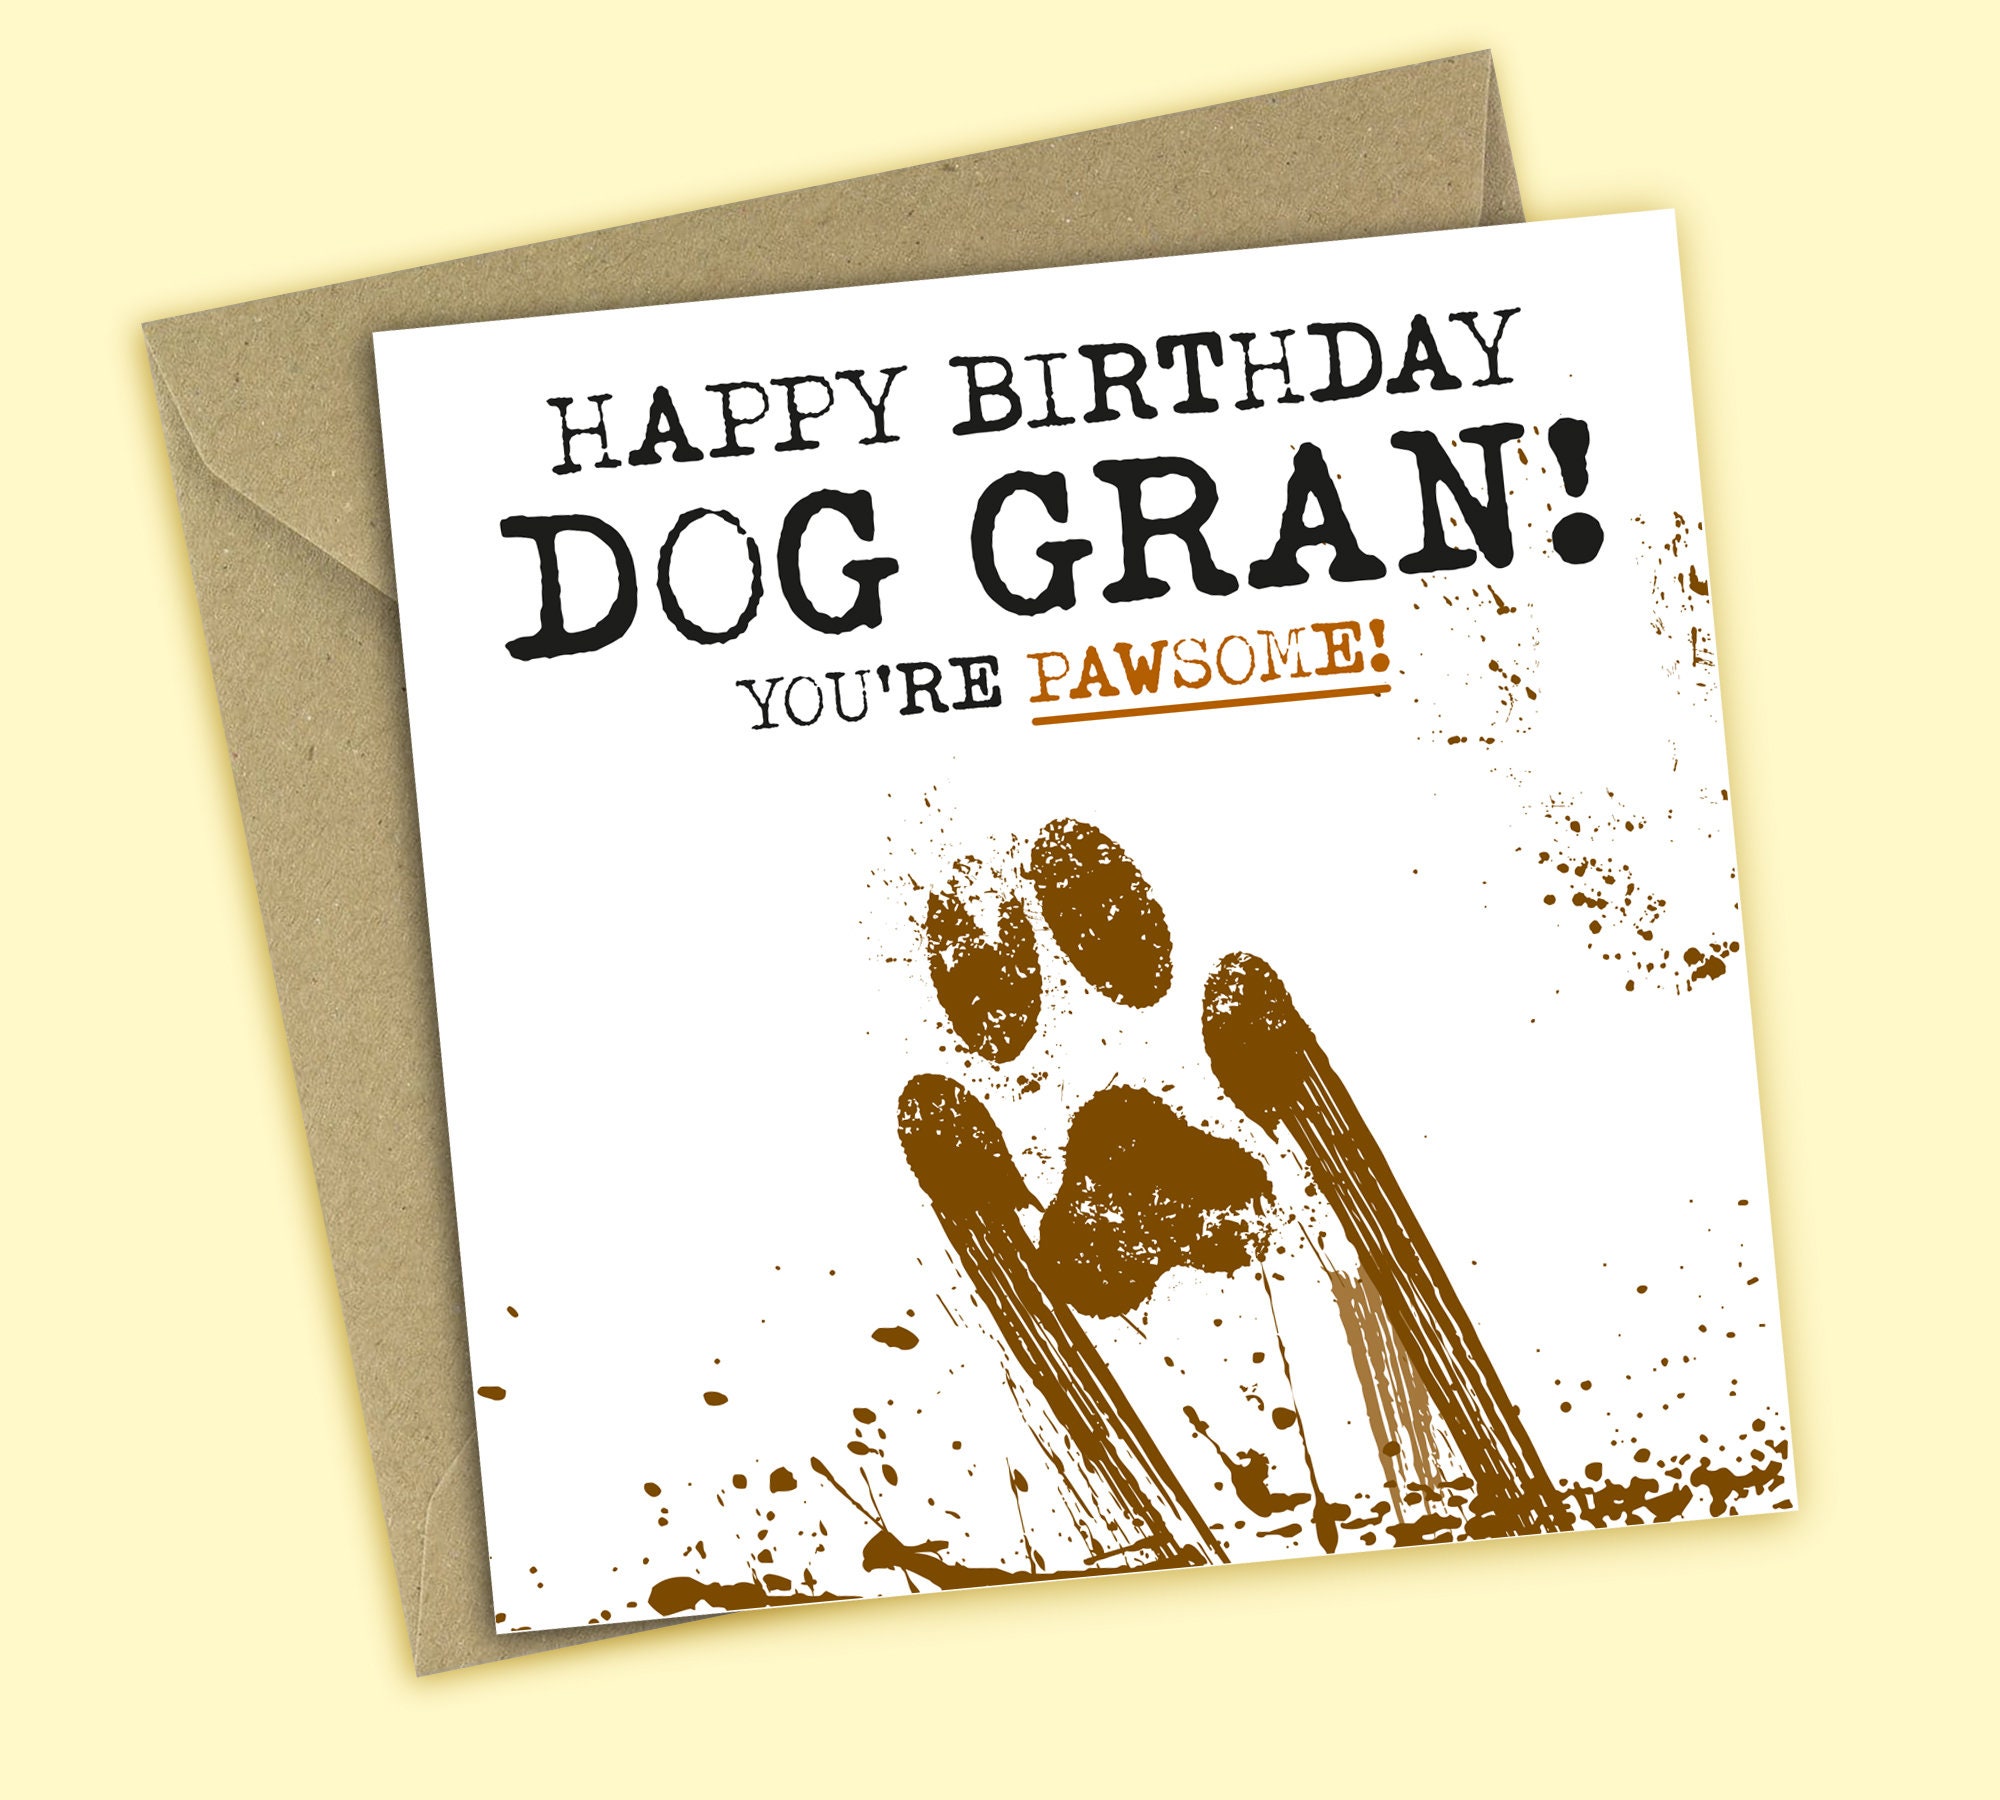 Happy Birthday to My Pawsome Dog Gran Funny Birthday Card - Etsy